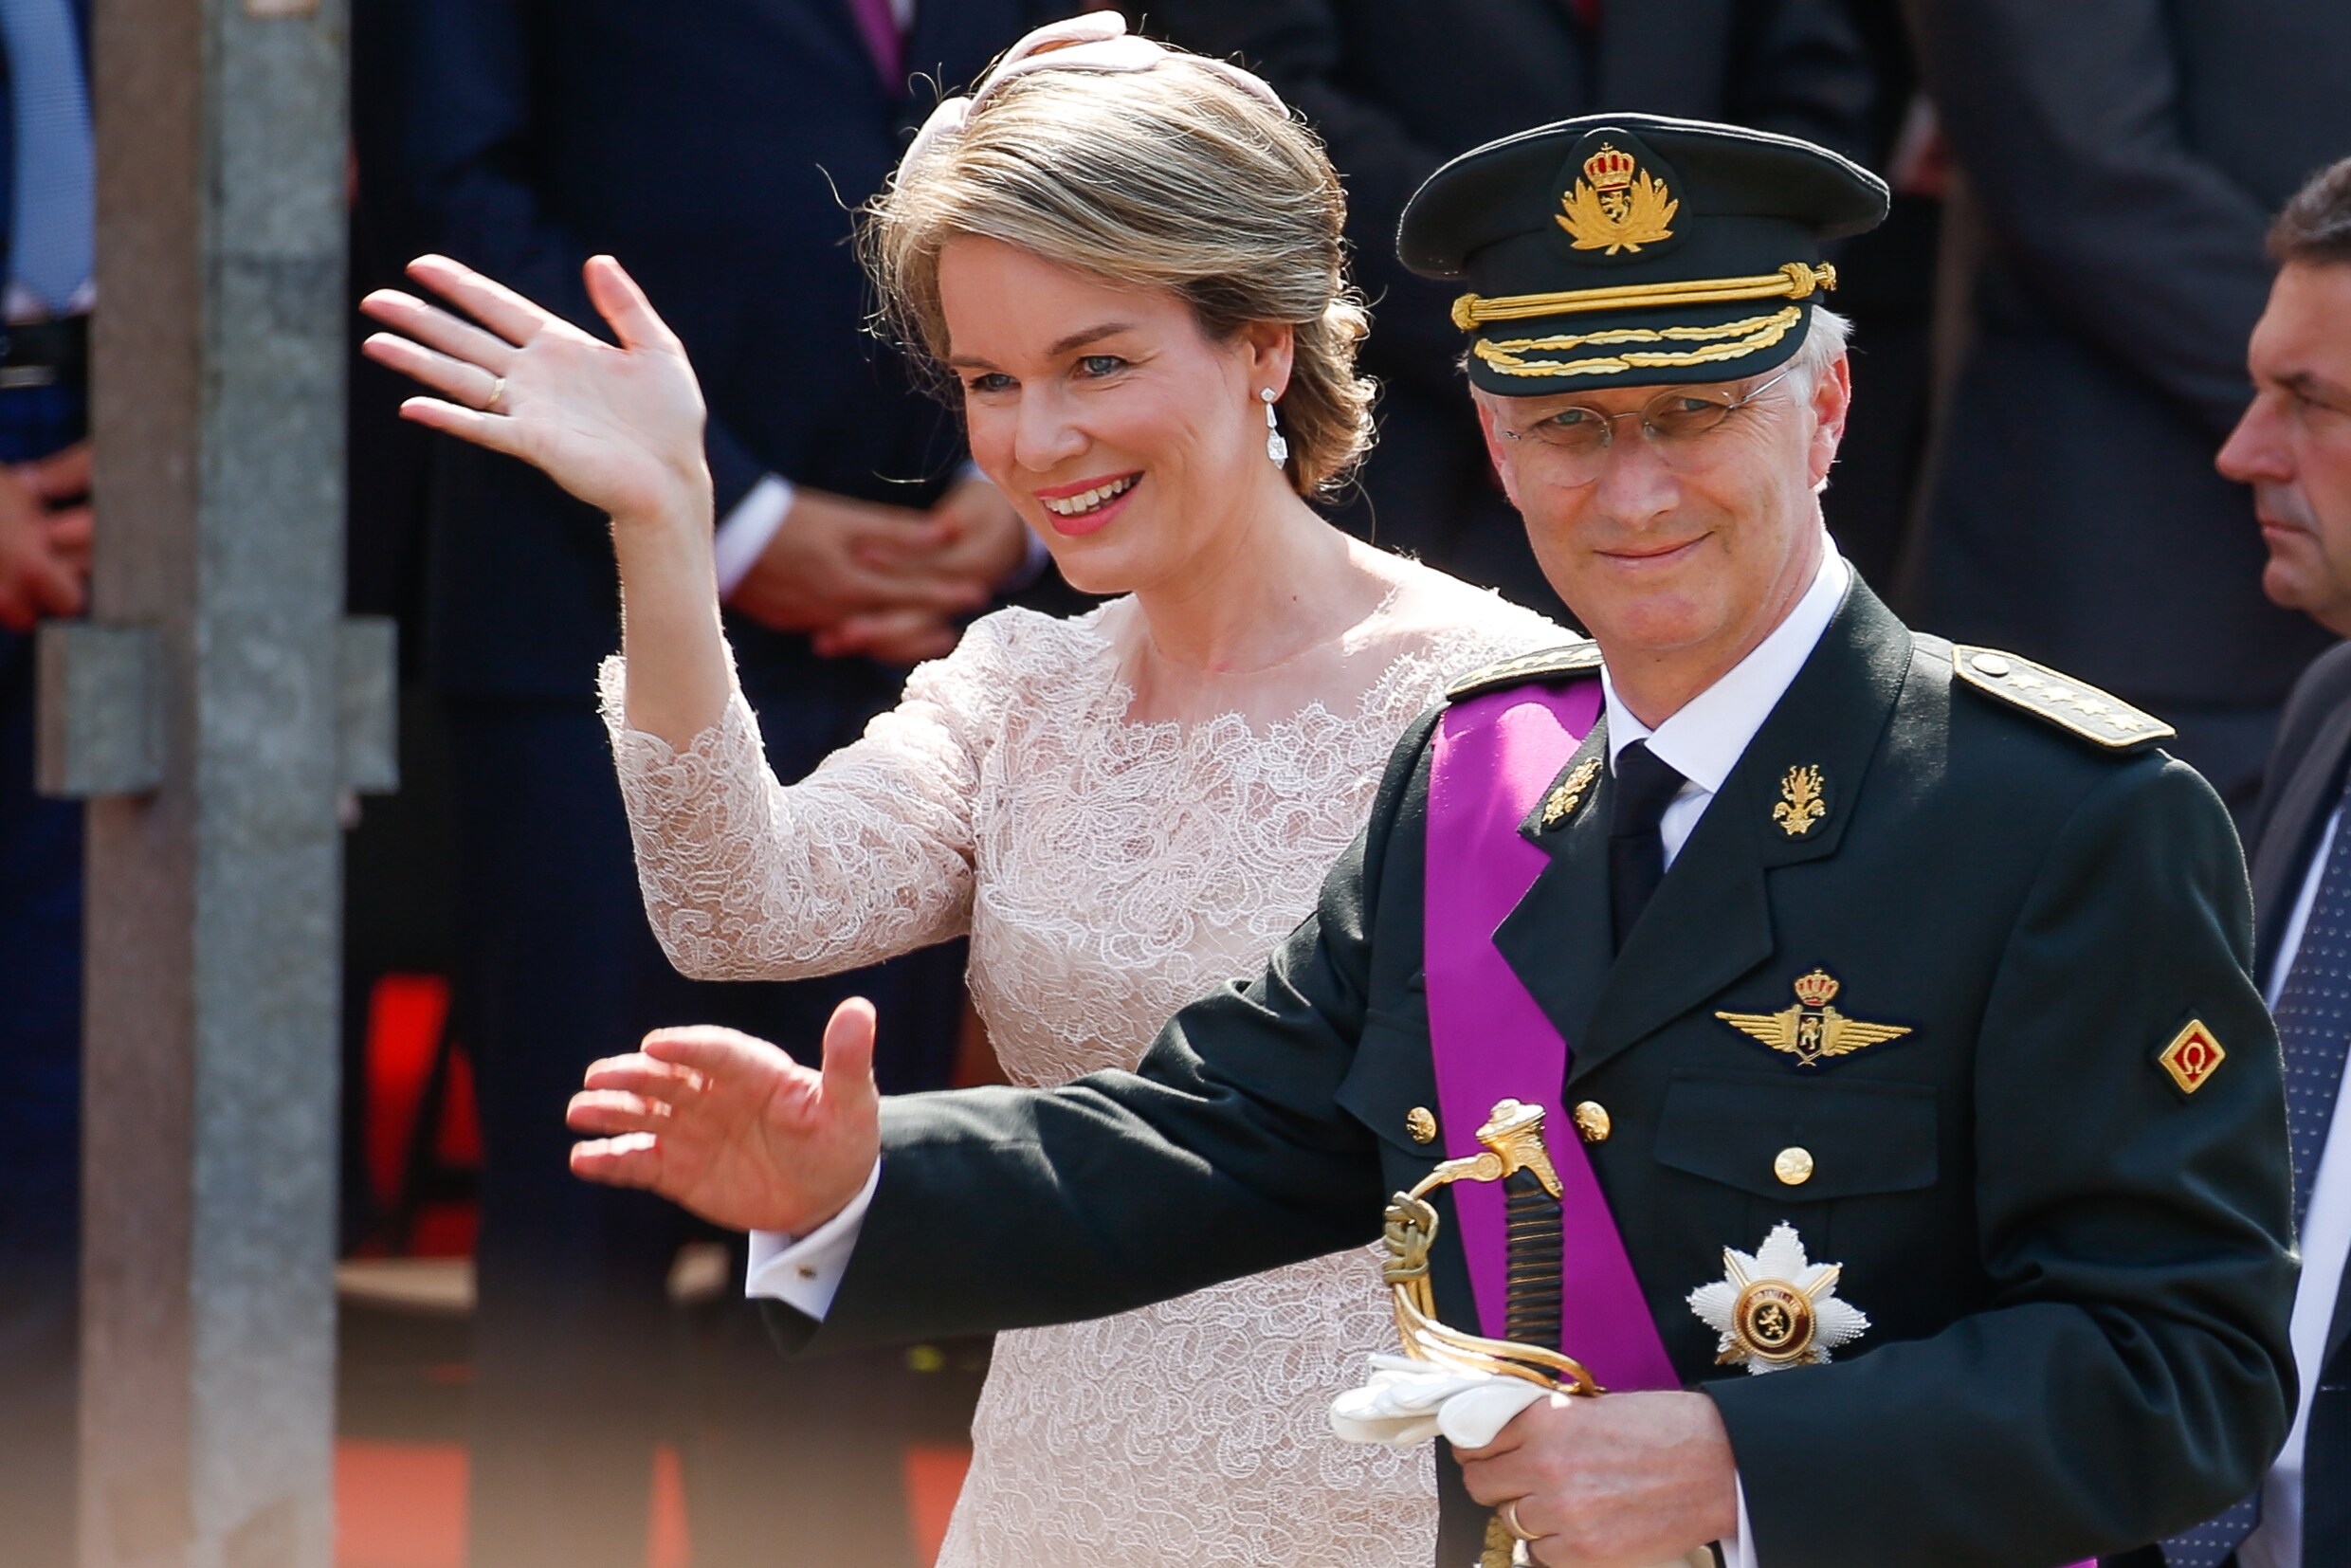 Koning Filip eert Rode Duivels: "Gestalte gegeven aan  wapenspreuk 'Eendracht maakt macht'"